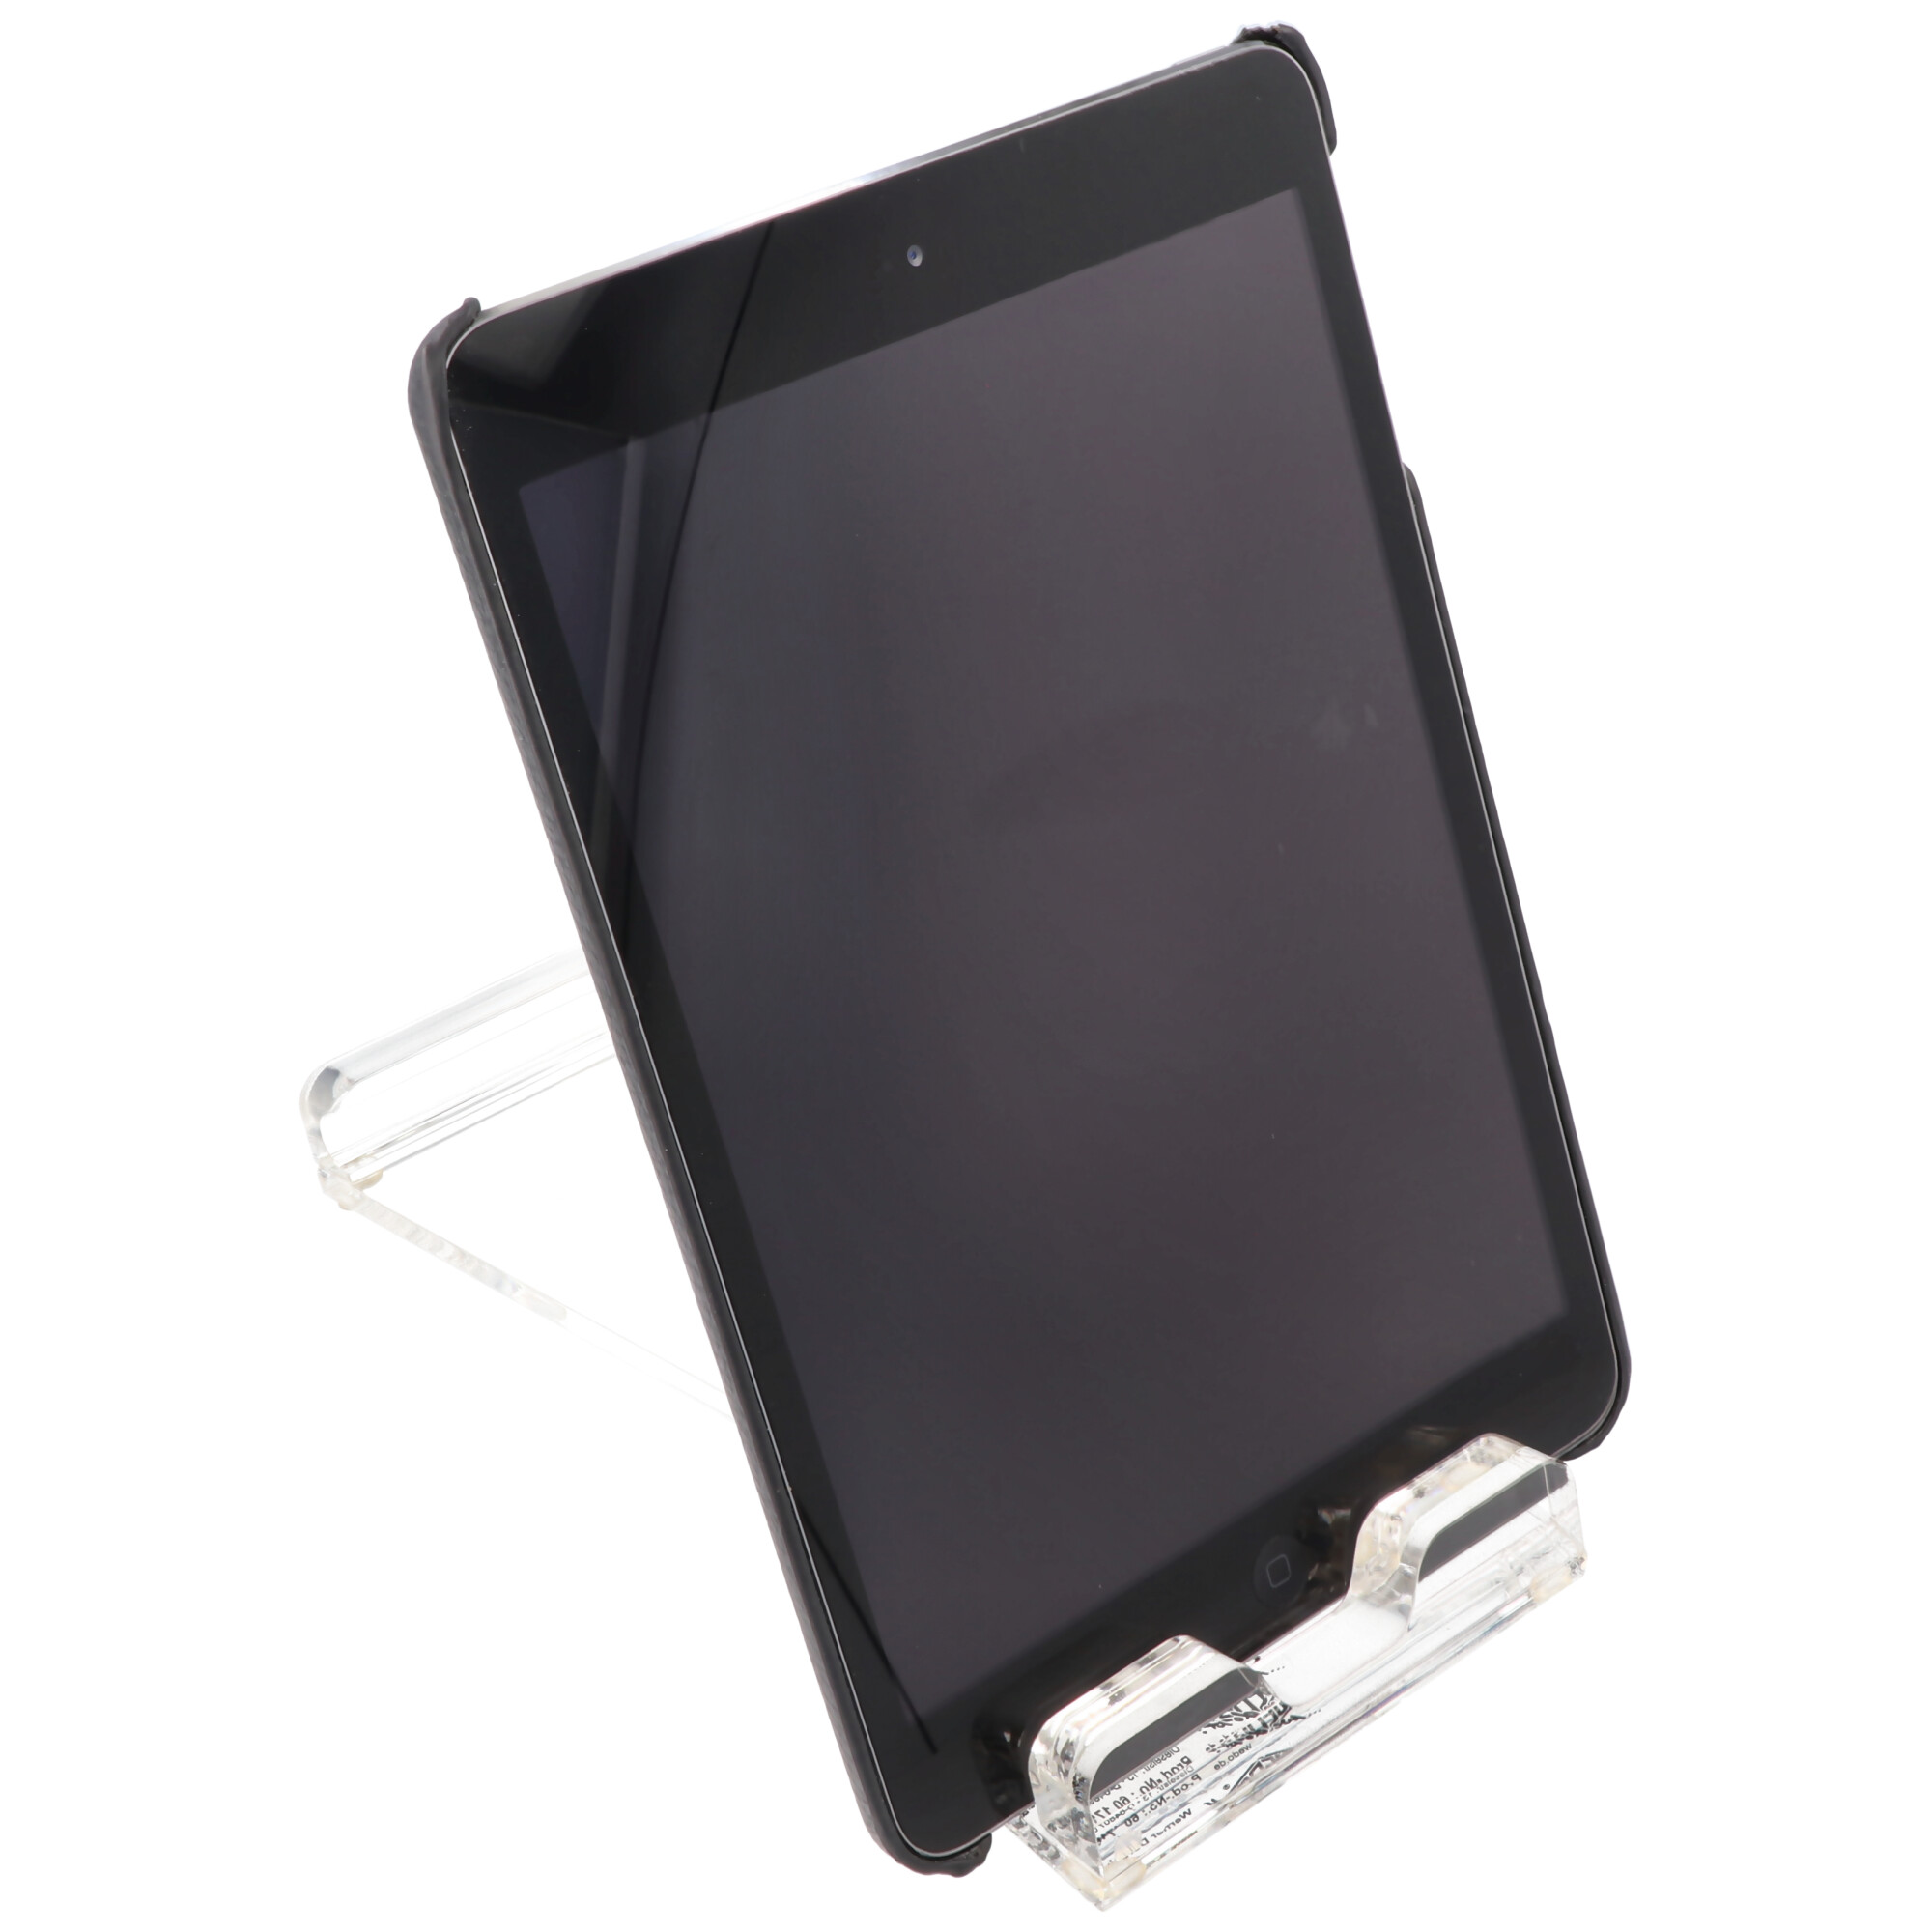 Tablet-Ständer aus hochwertigem, kristallklarem Acrylglas, Handyhalter, verschiedene Blickwinkel möglich, 180mm x 91mm x 74mm